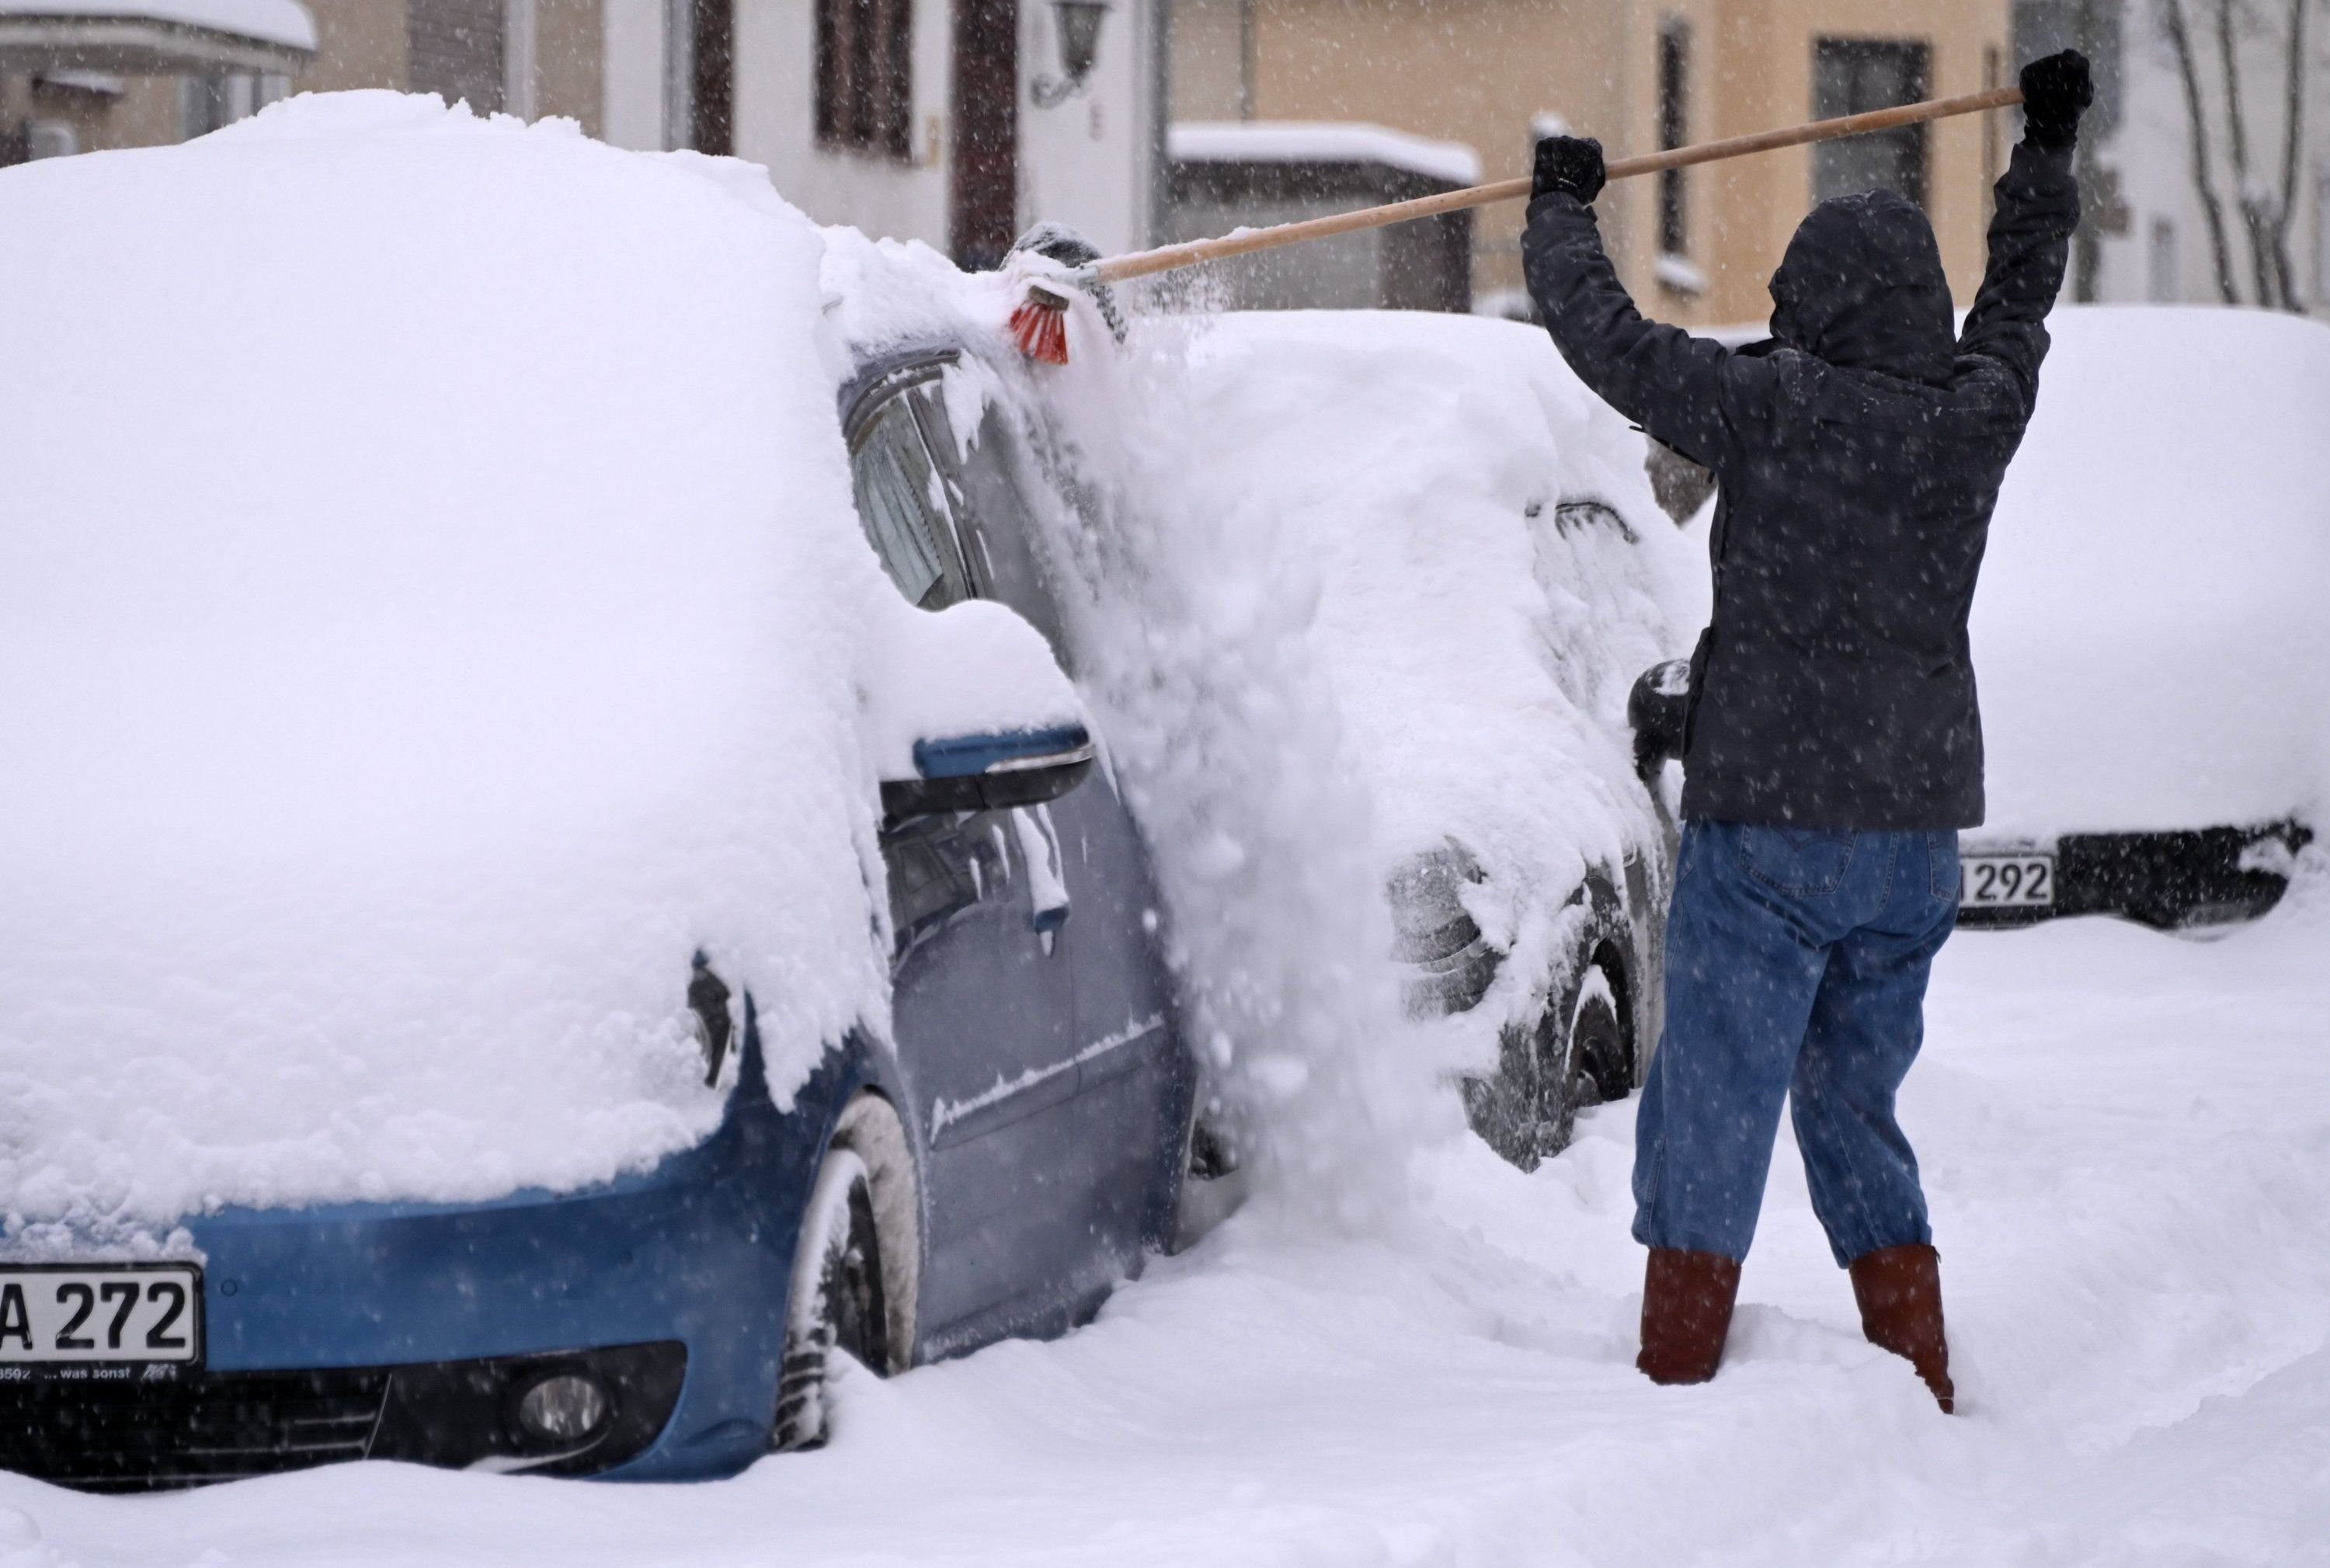 Diese 12 Dinge sollten Autofahrer im Winter unbedingt dabei haben